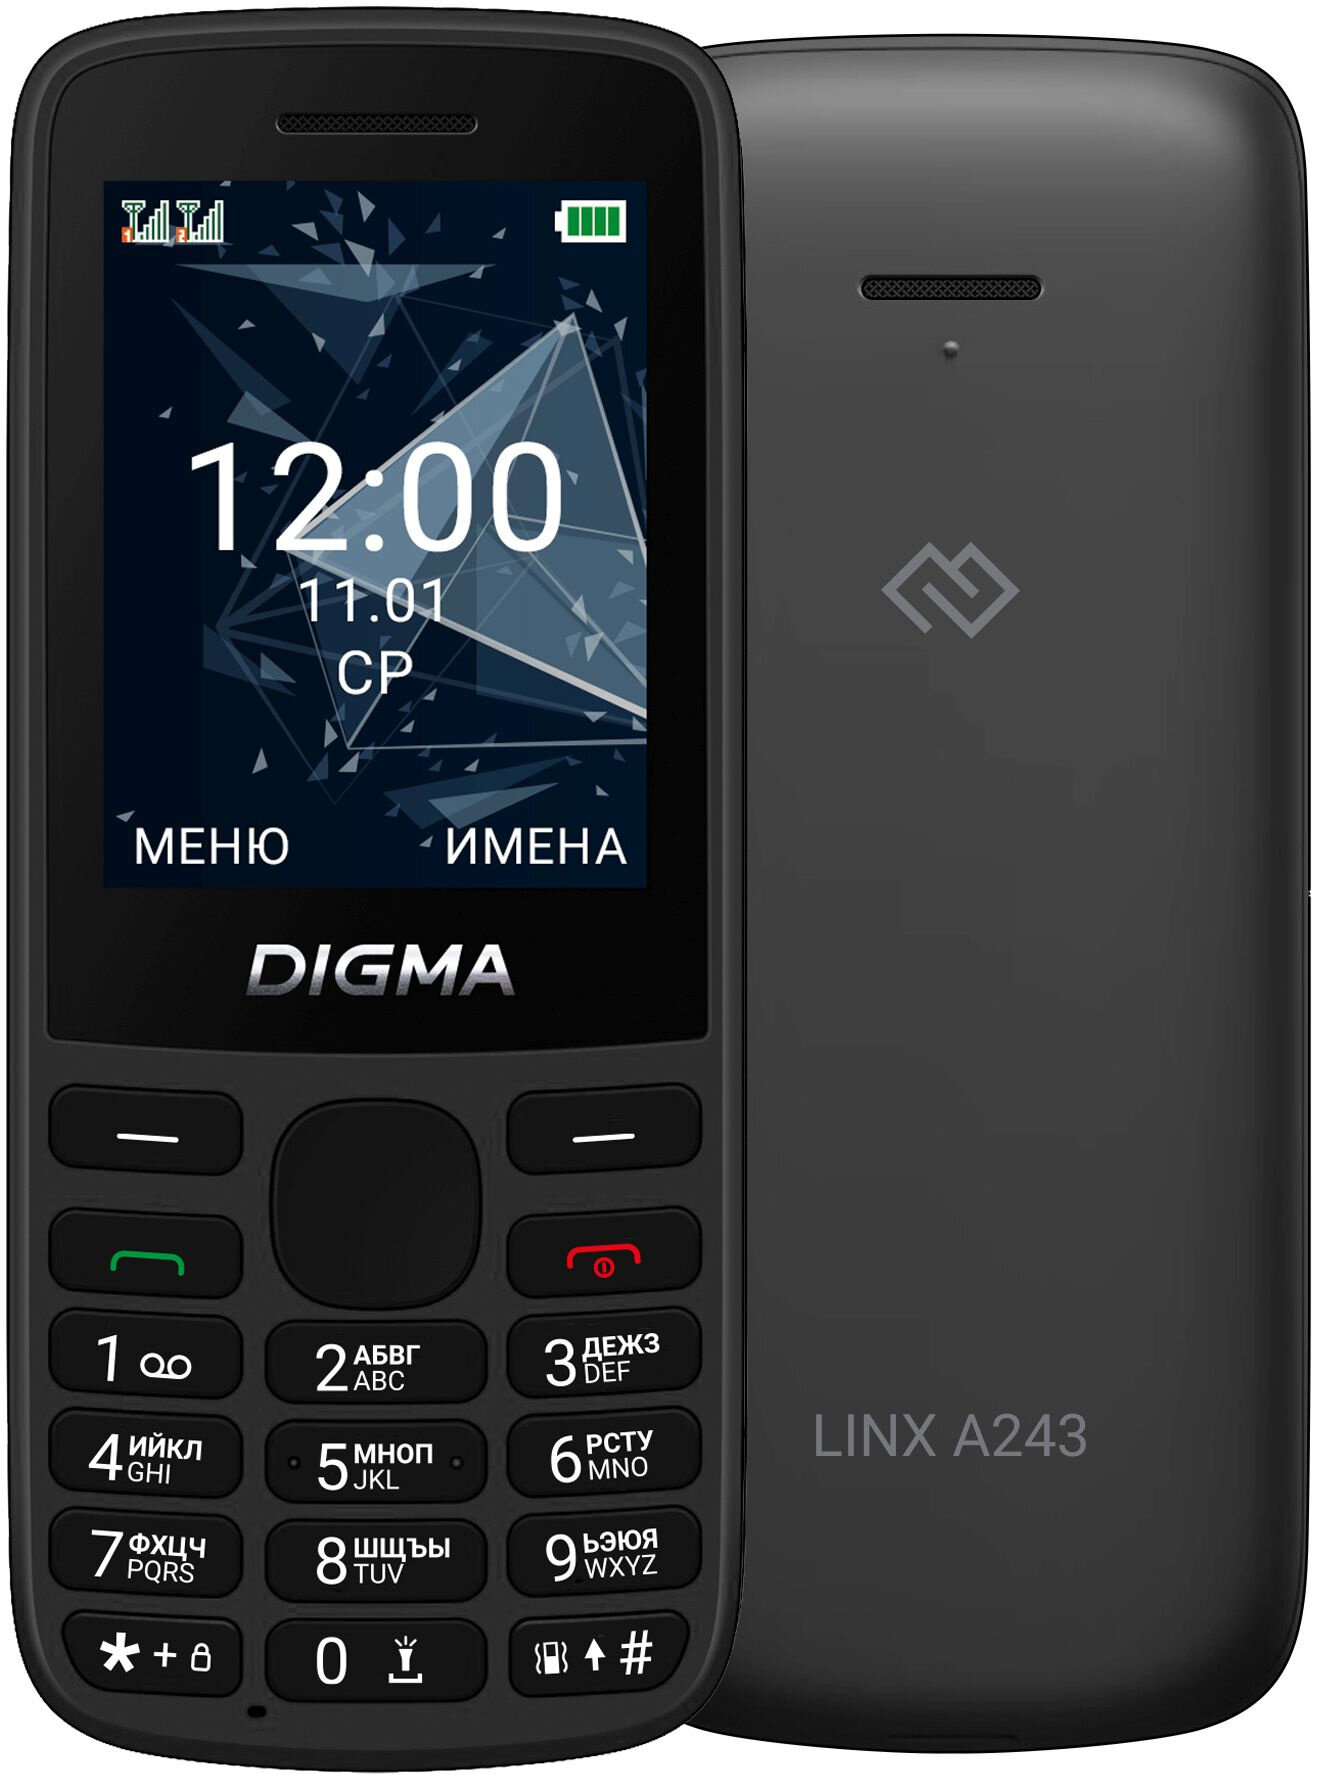 Мобильный телефон Digma A243 Linx 32Mb черный моноблок 2Sim 2.4 240x320 GSM900/1800 GSM1900 microSD max32Gb